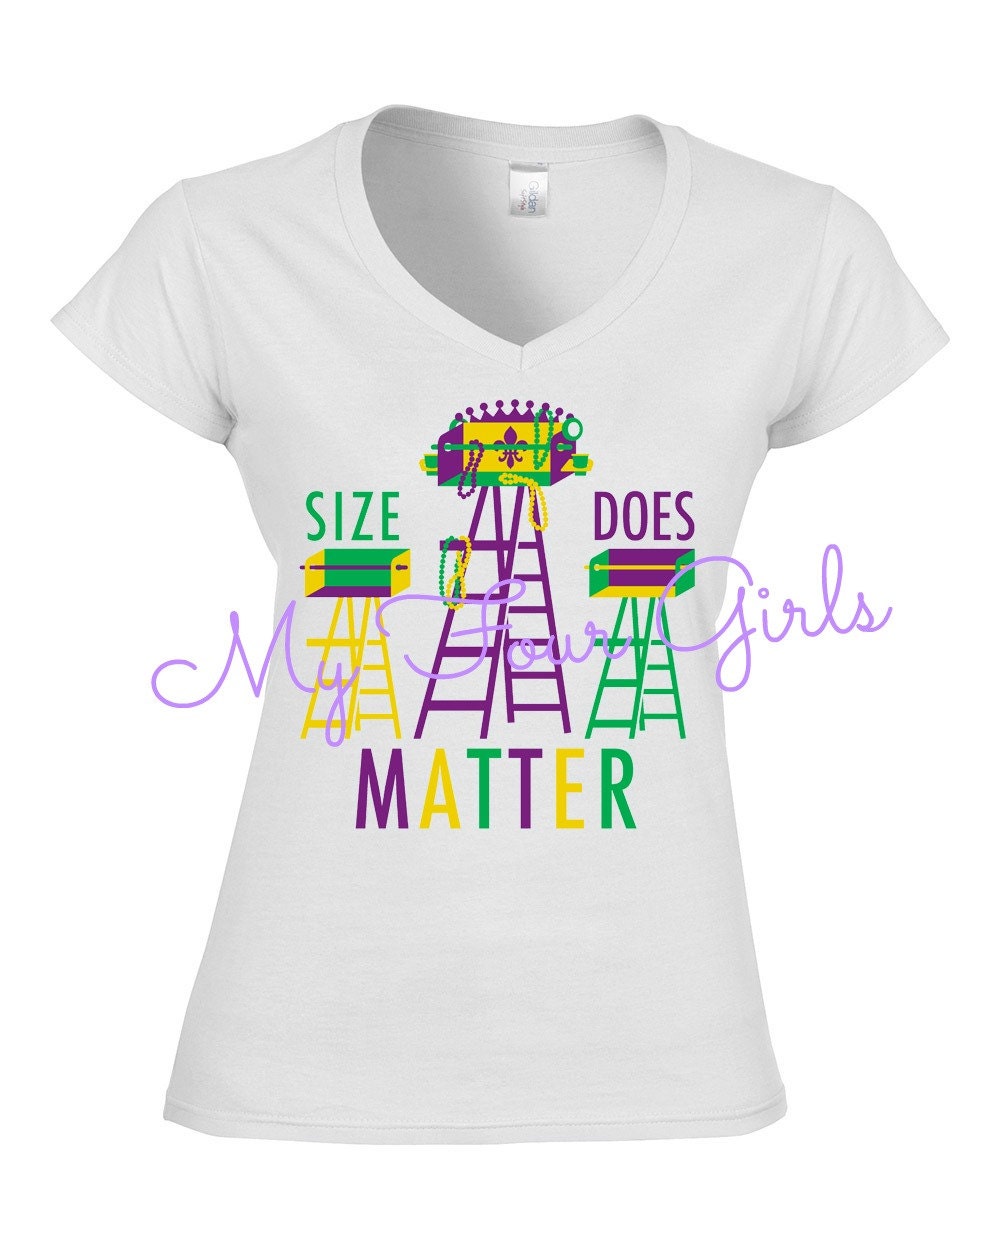 Mardi Gras Shirt Womens Shirt Purple Green Gold Shirt Ladder